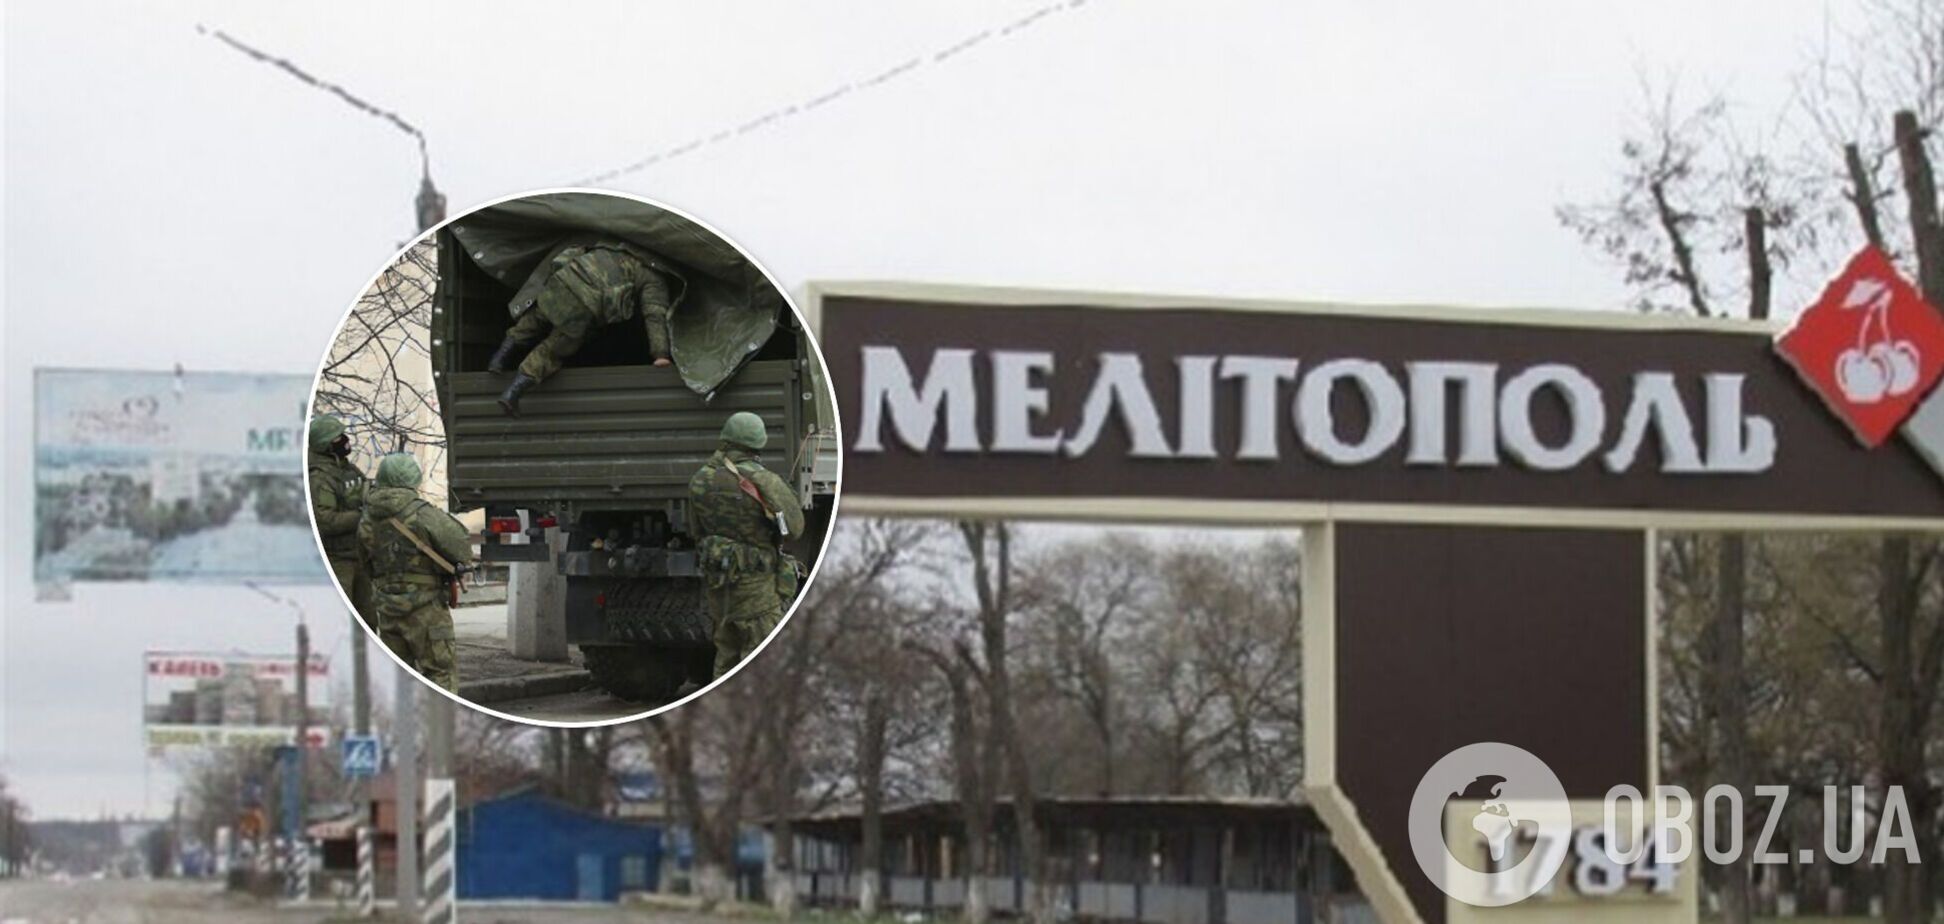 Горожане несли украинский флаг: в Мелитополе оккупанты устроили стрельбу по толпе, есть раненые. Видео